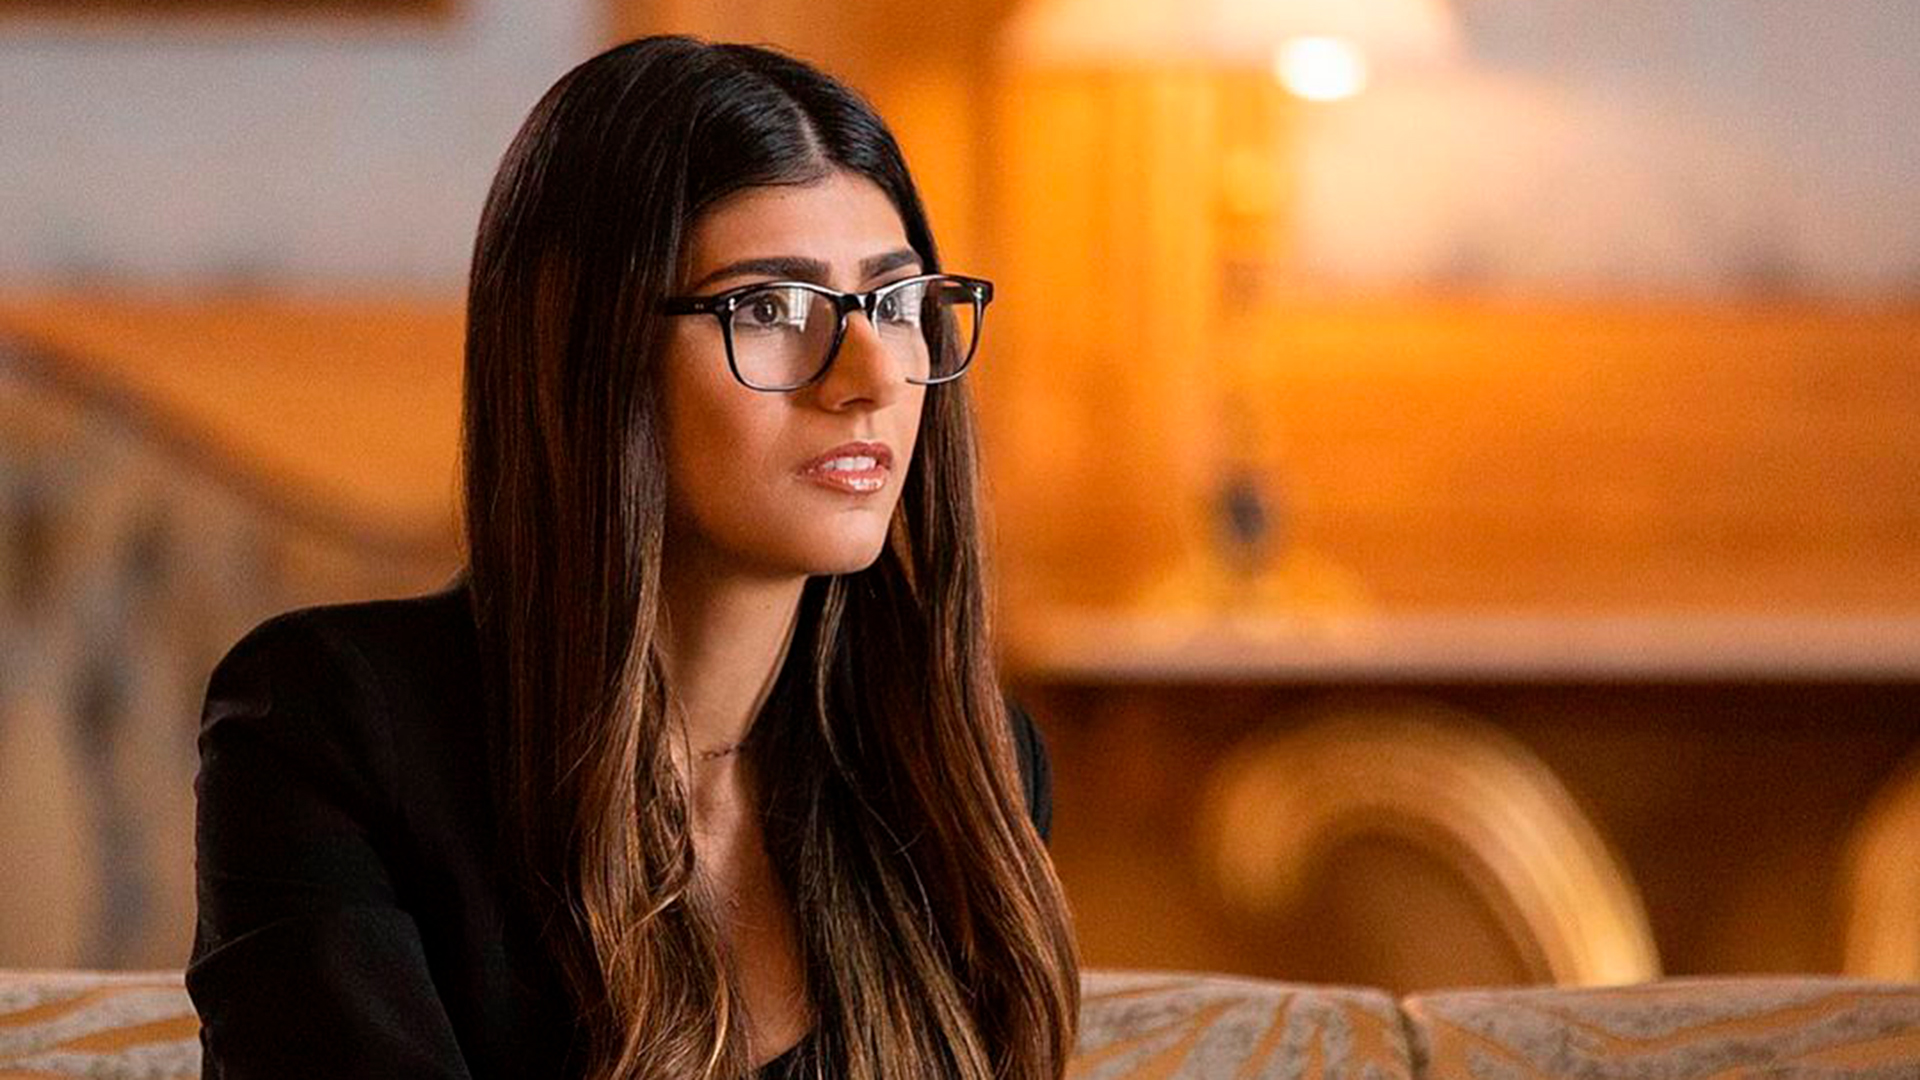 Mia khalifa con lentes porno Mia Khalifa Ayudara Al Libano Con Uno De Los Elementos Que La Hizo Famosa Como Actriz Porno Infobae